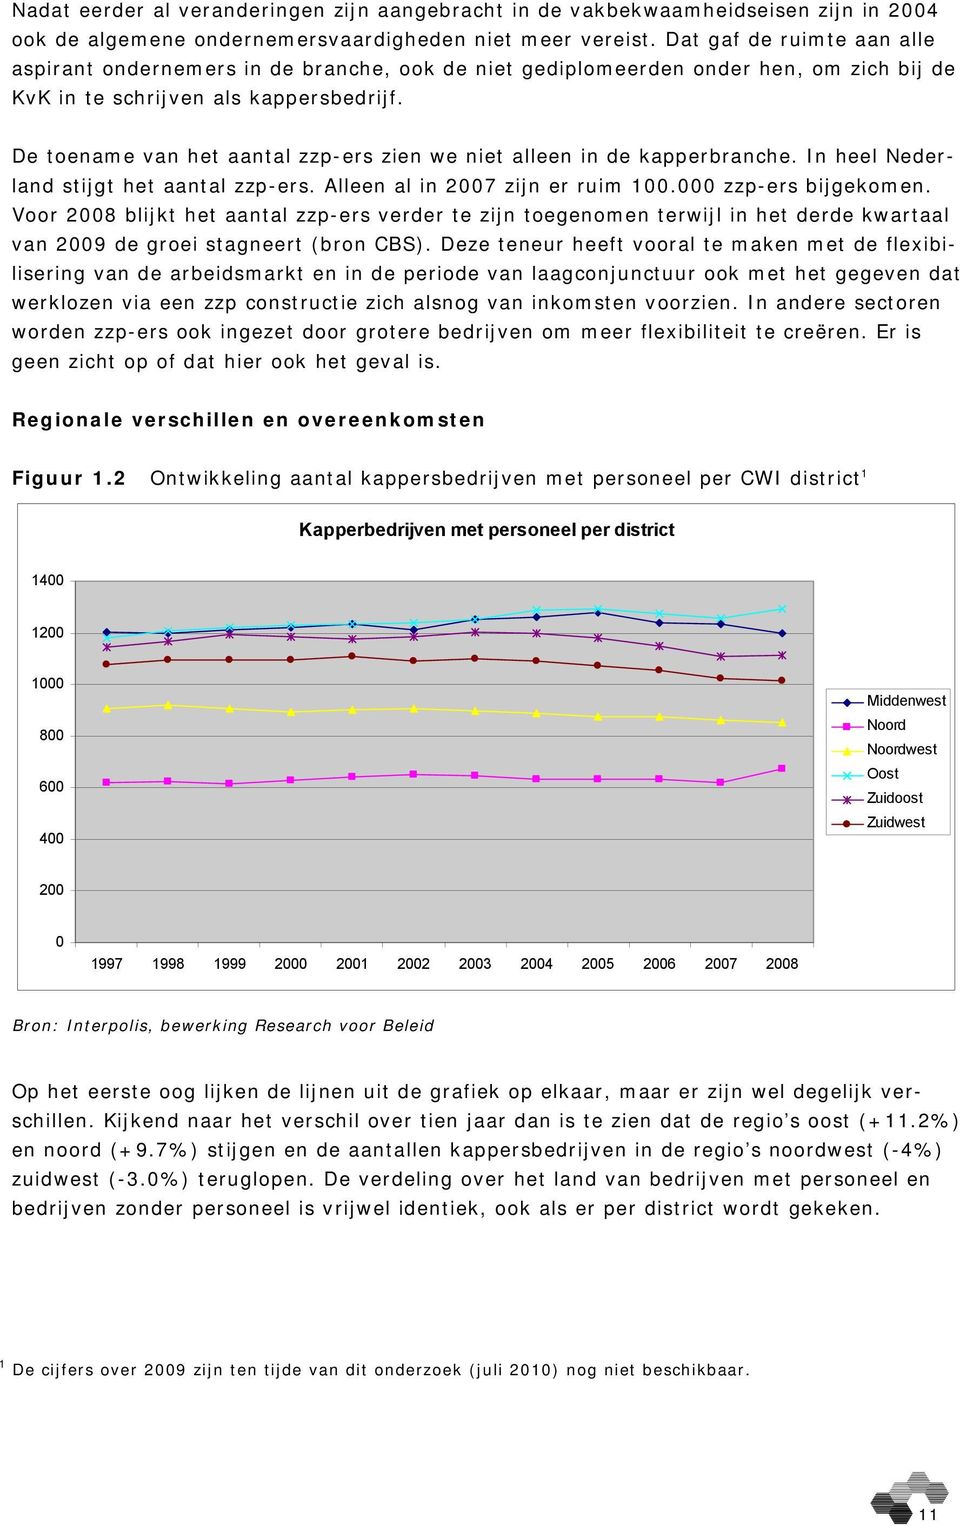 De toename van het aantal zzp-ers zien we niet alleen in de kapperbranche. In heel Nederland stijgt het aantal zzp-ers. Alleen al in 2007 zijn er ruim 100.000 zzp-ers bijgekomen.